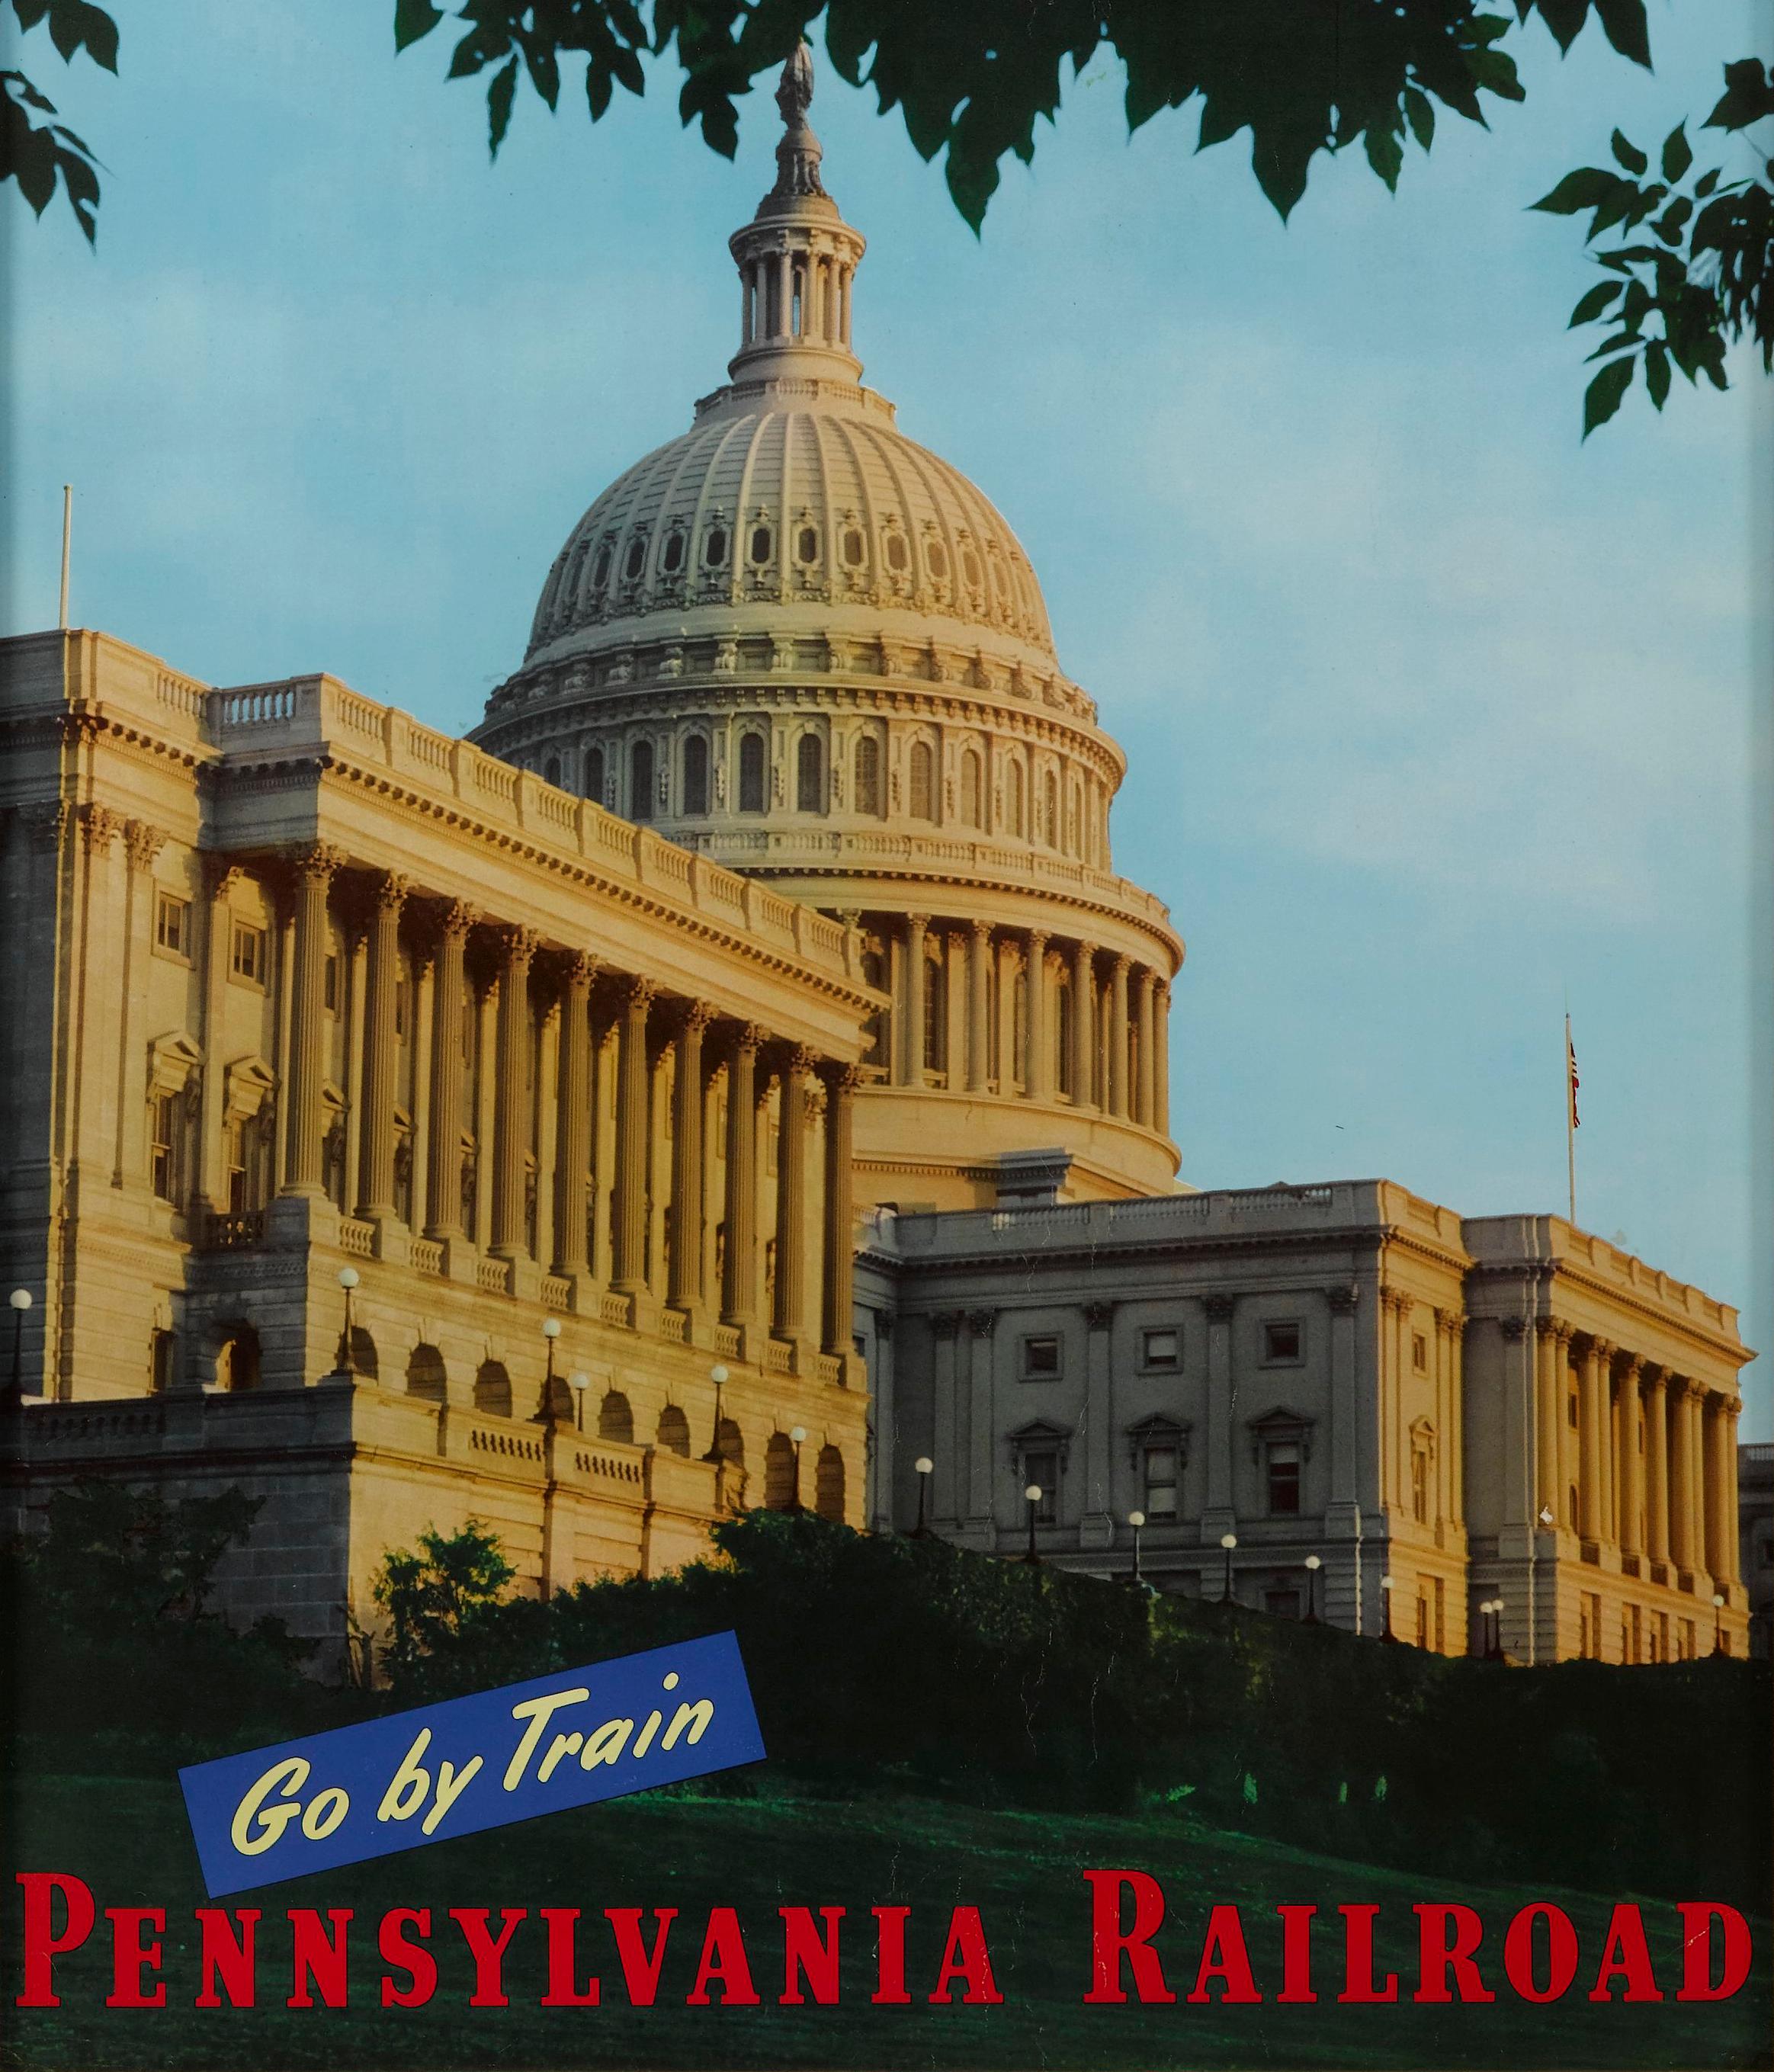 Il s'agit d'une affiche de voyage vintage, imprimée pour la Pennsylvania Railroad, par Einson-Freeman Co. de New York. L'affiche représente l'emblématique Capitole des États-Unis à Washington, D.C.. Le texte 